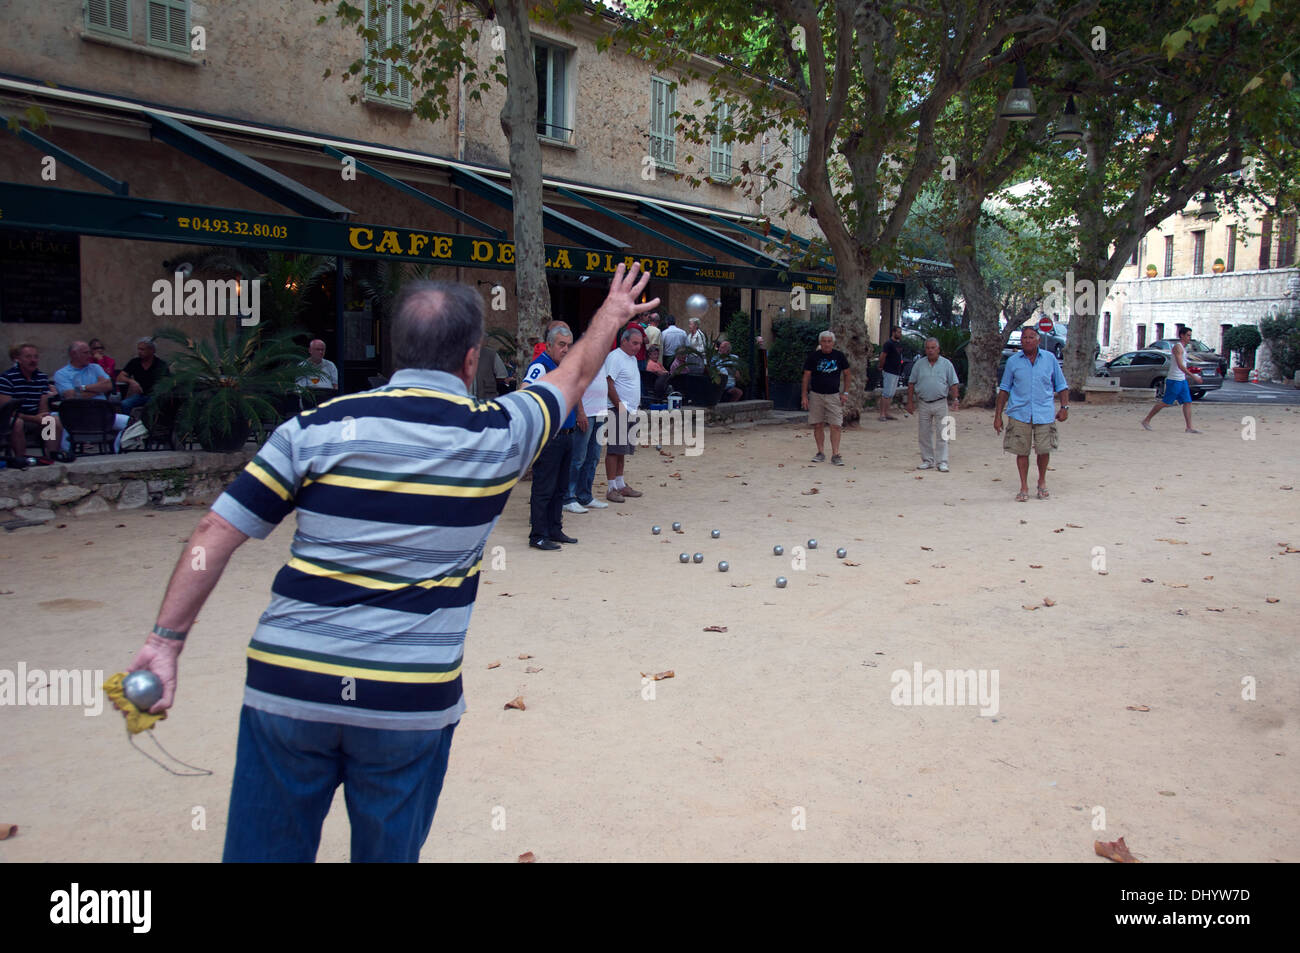 Les hommes jouer boule St Paul de Vence Provence France Banque D'Images